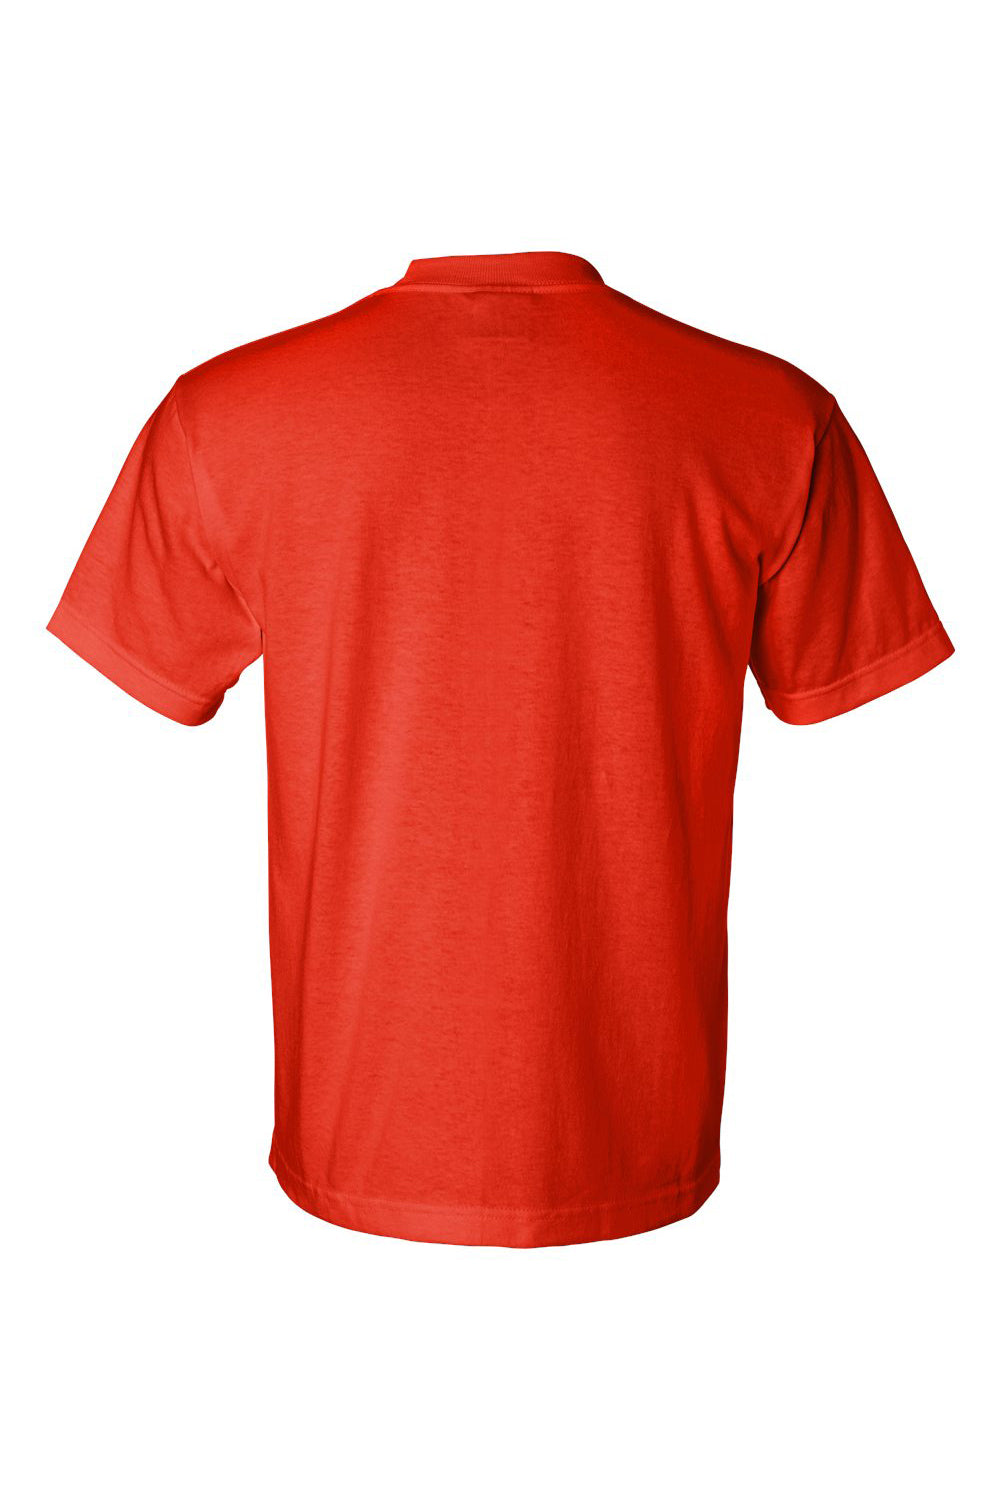 Bayside 1701 Mens USA Made Short Sleeve Crewneck T-Shirt Safety Orange Flat Back